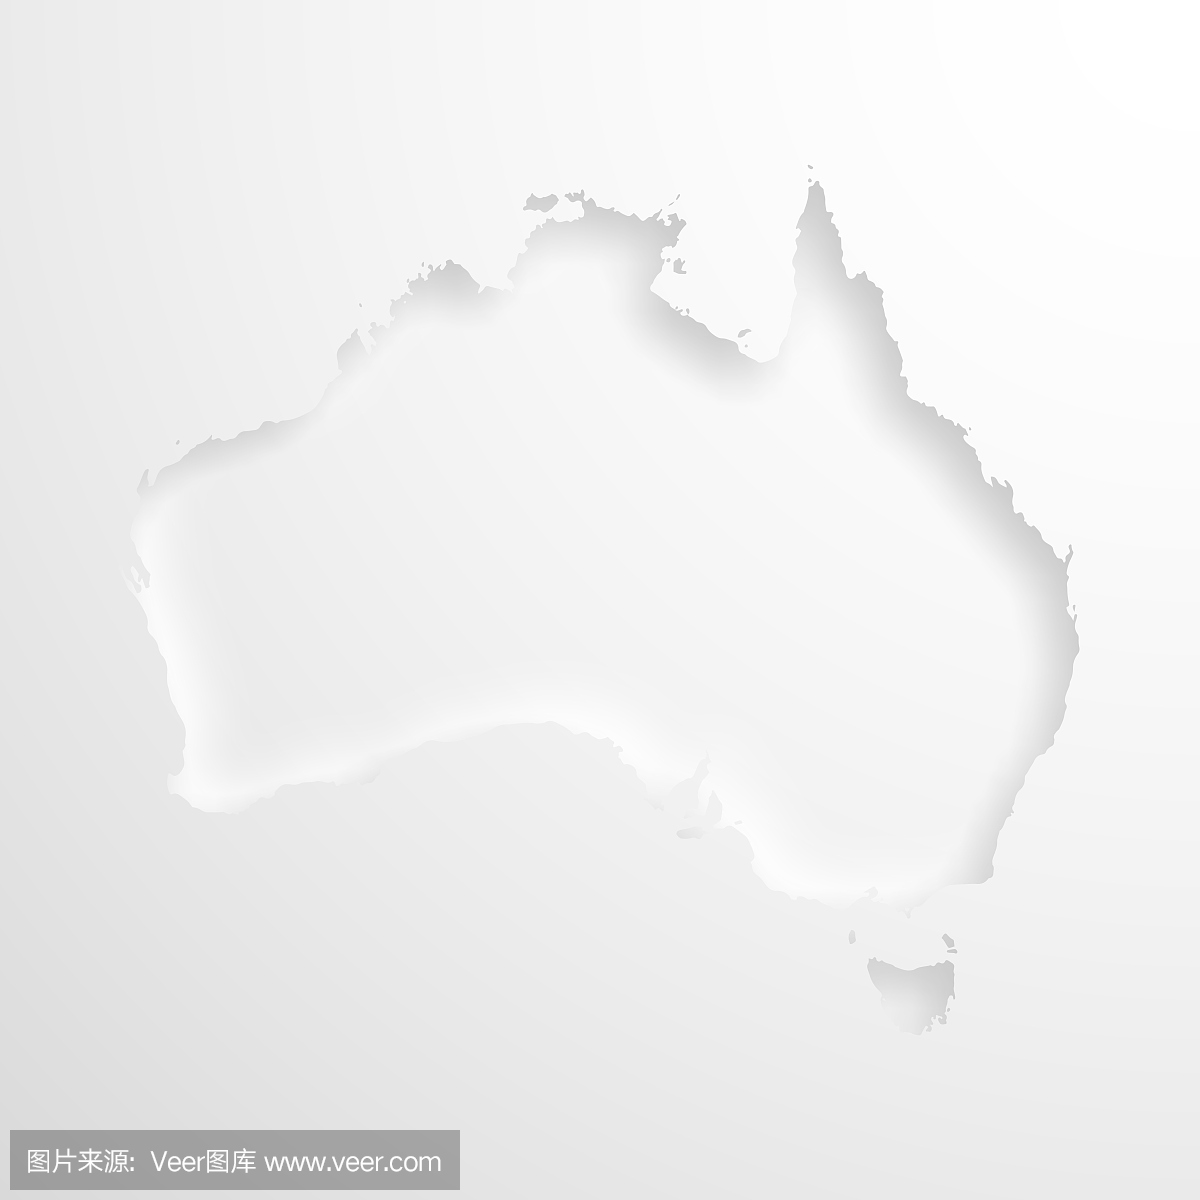 澳大利亚地图与空白背景上的压纹纸效果